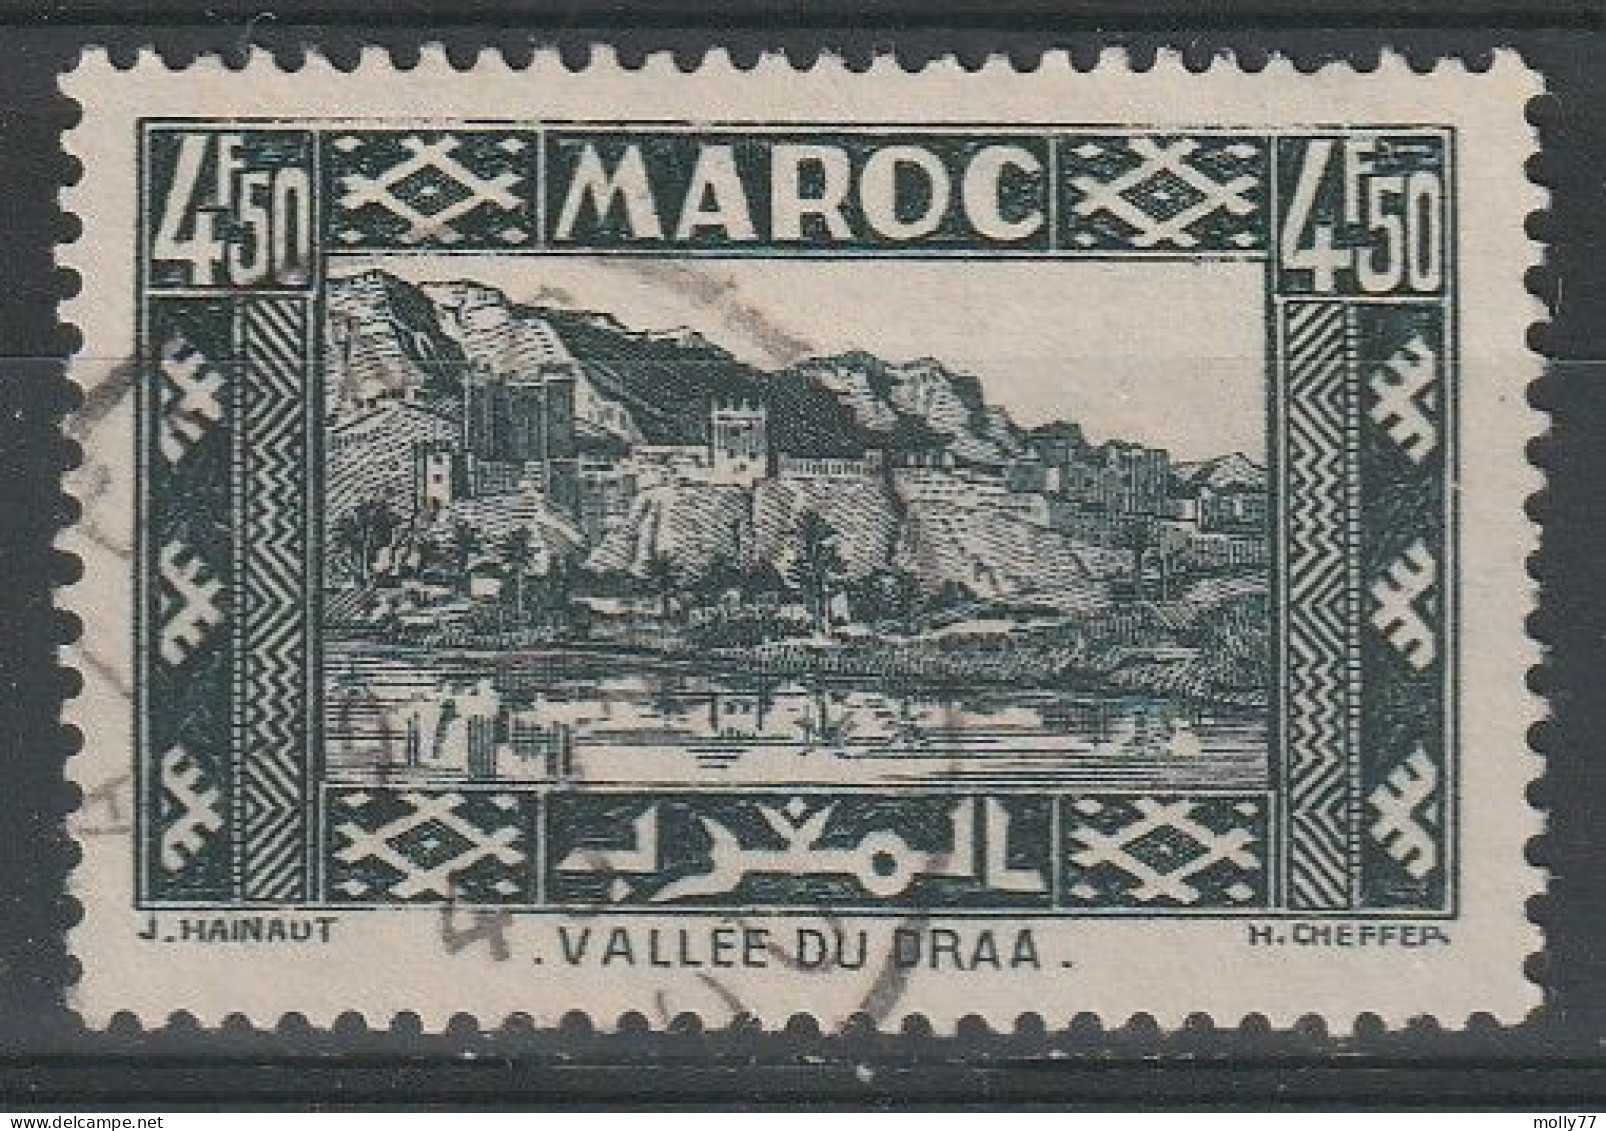 Maroc N°195 - Oblitérés